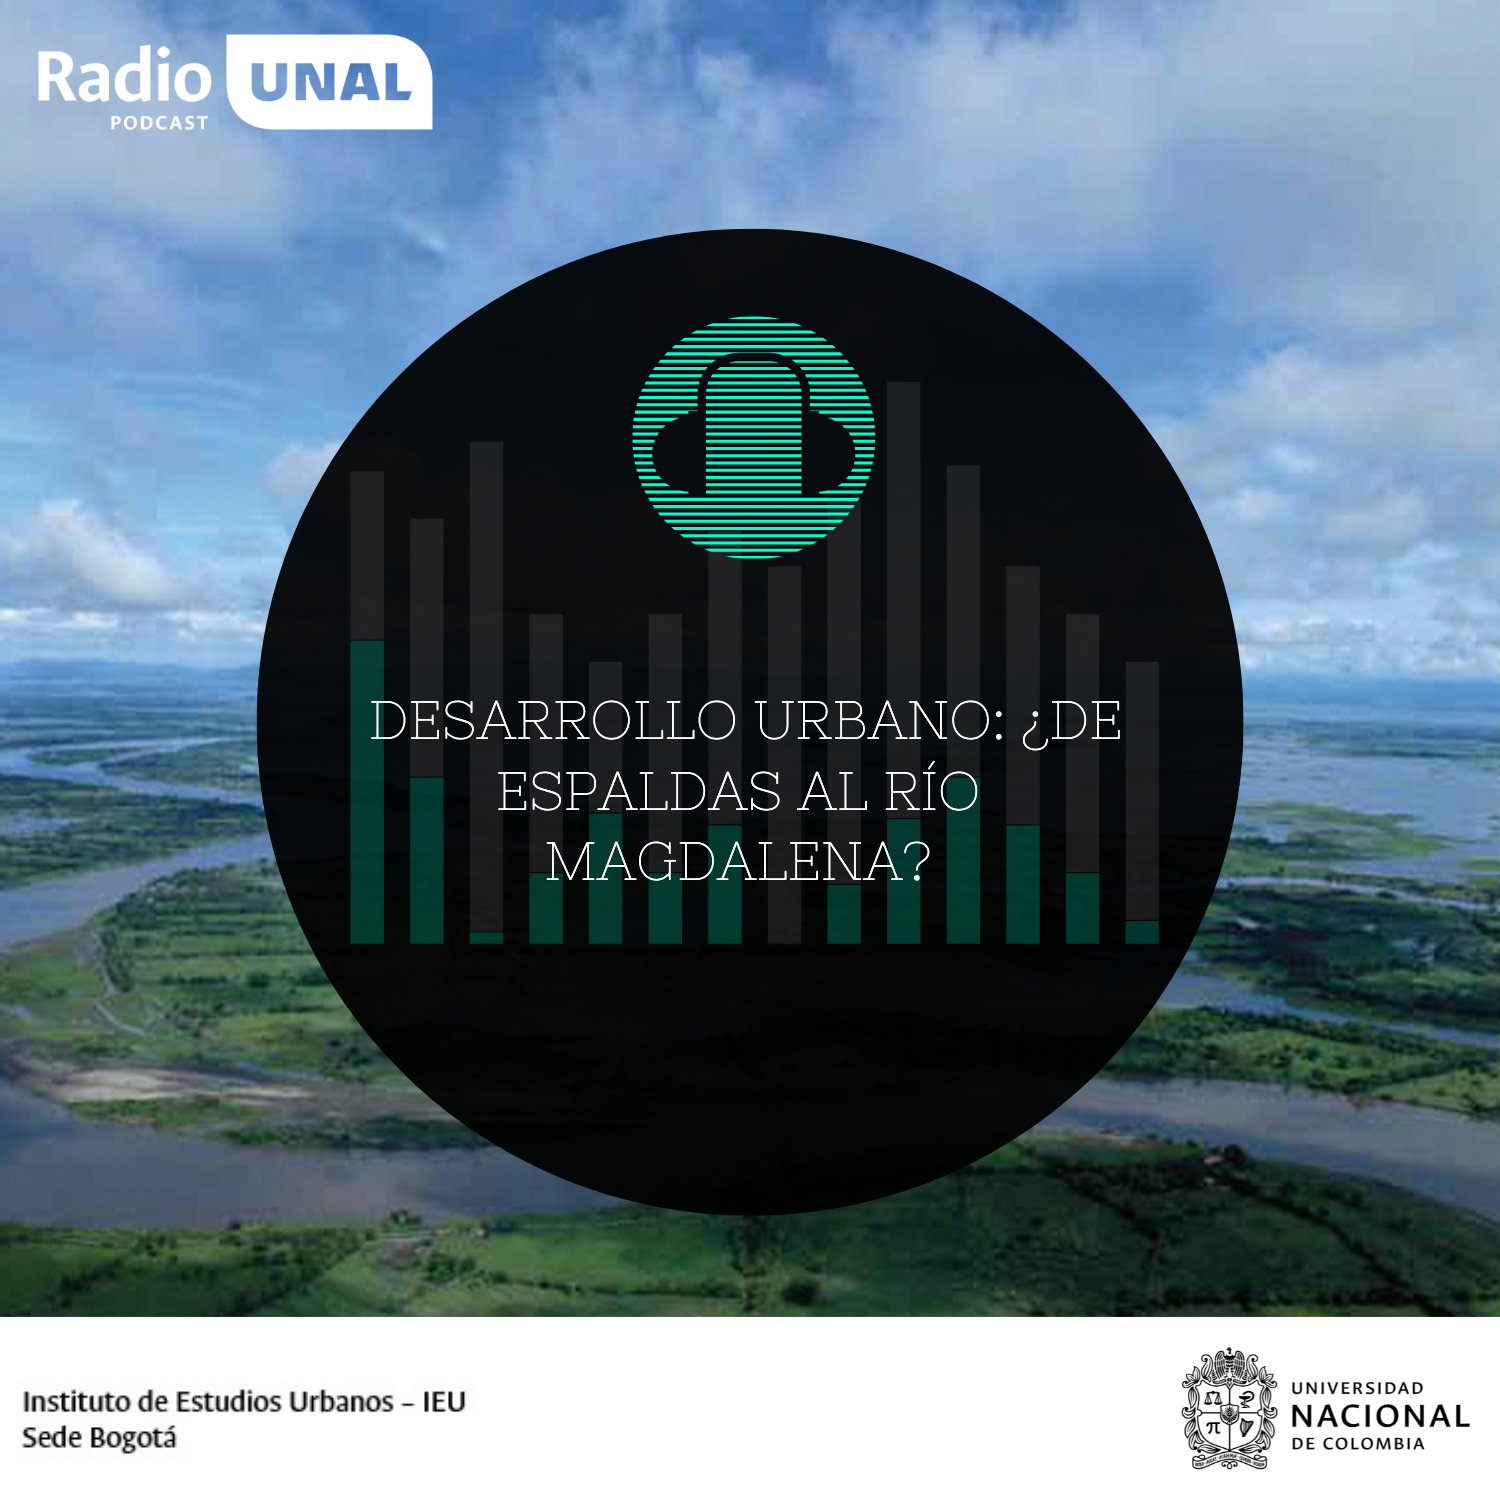 #PodcastRadioUNAL Desarrollo urbano: ¿De espaldas al río Magdalena?